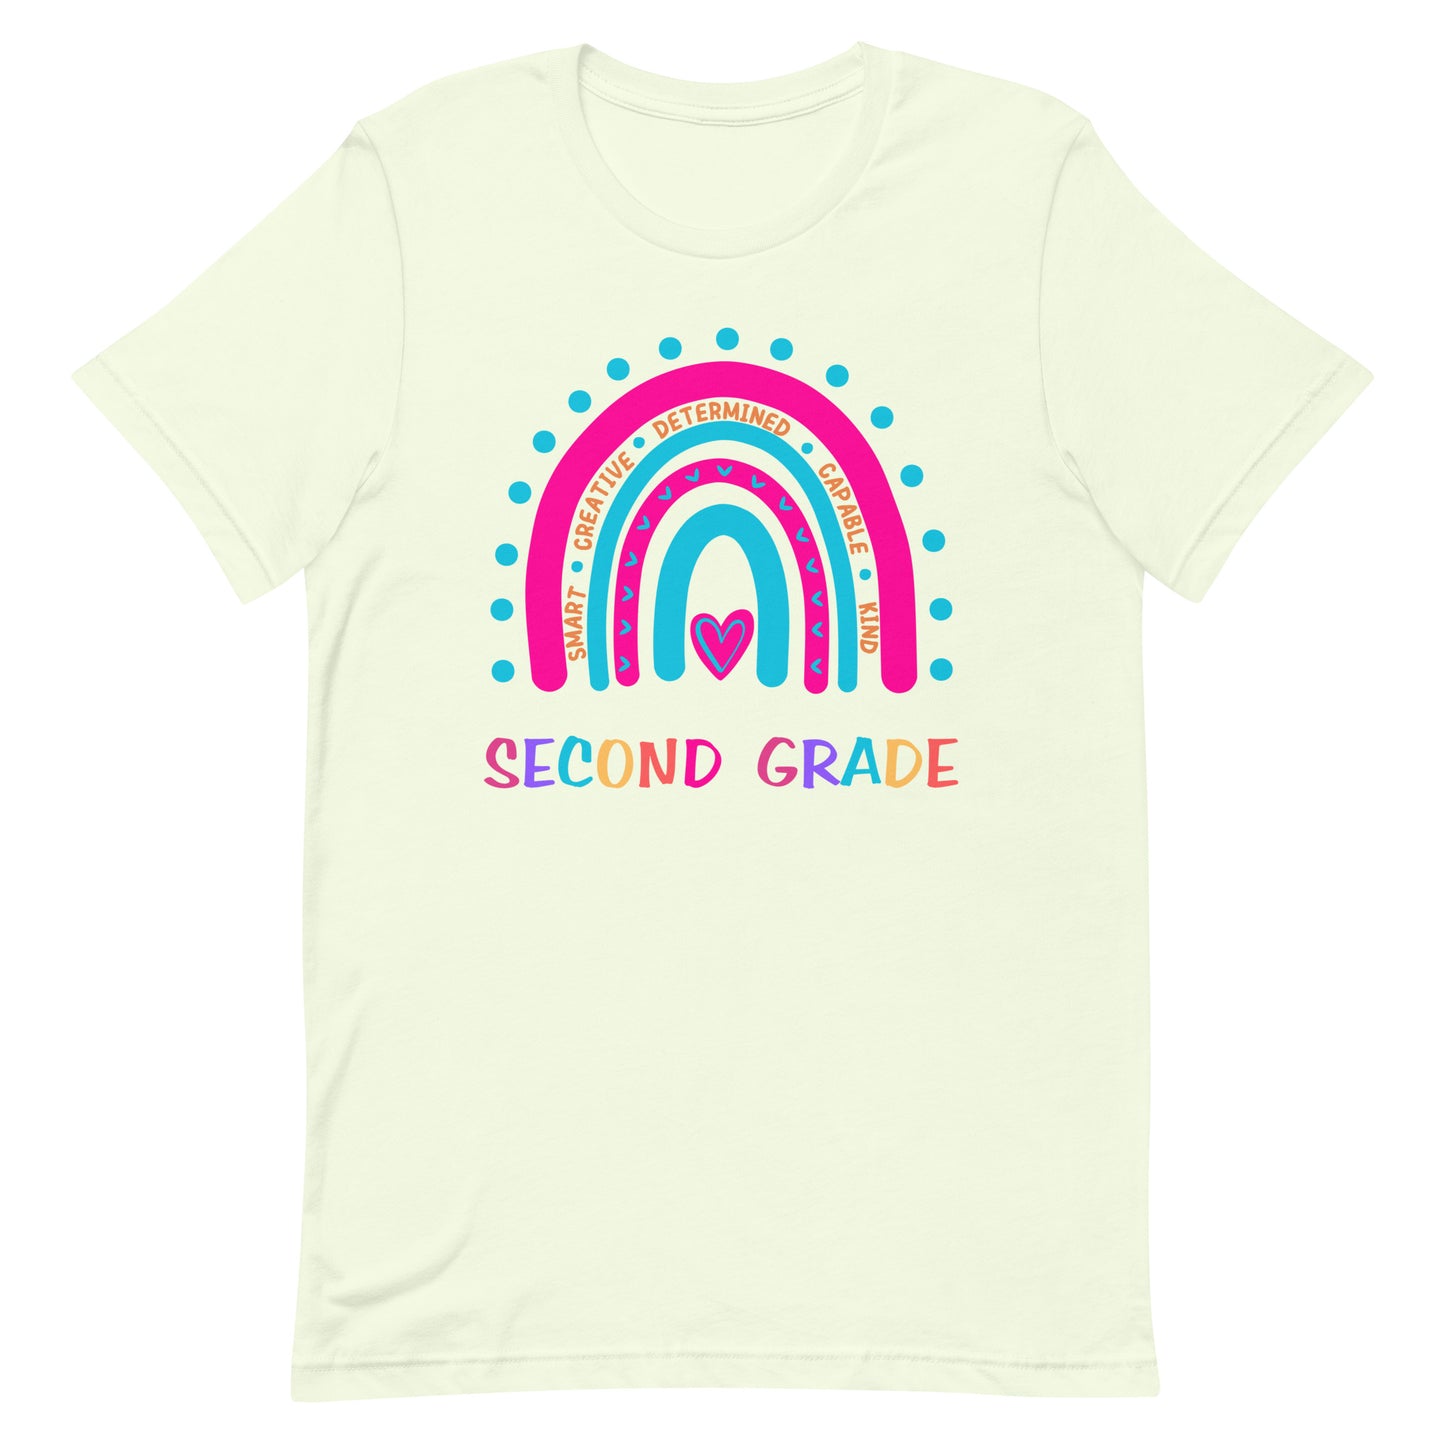 Second Grade Affirmation T-shirt